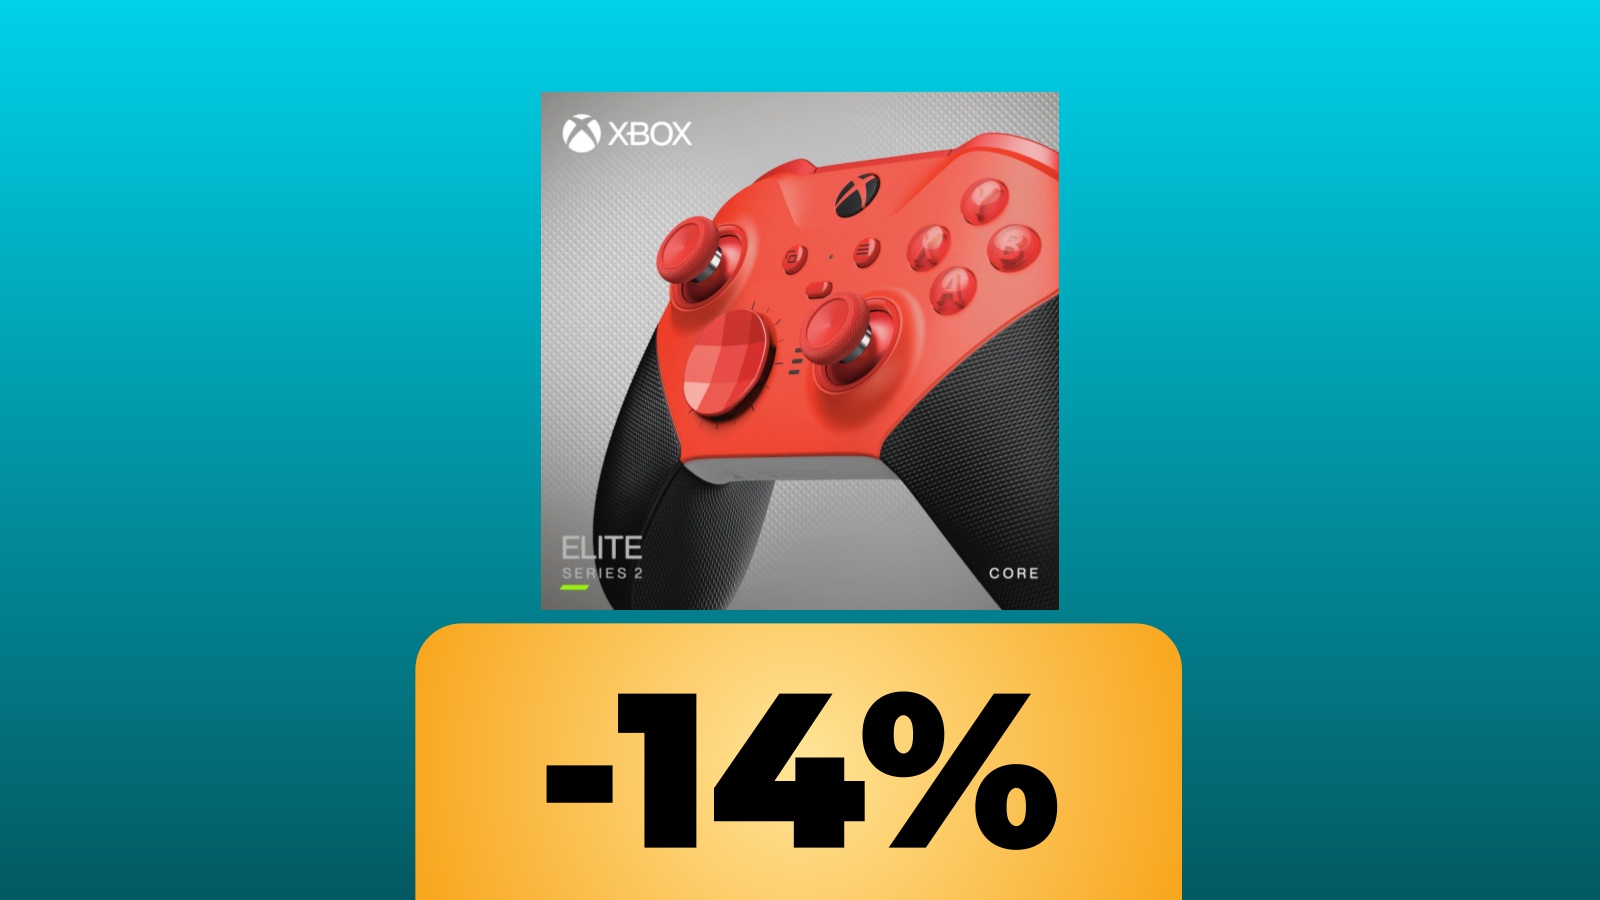 La confezione del controller Xbox Elite Series 2 Core e sotto la percentuale dello sconto di Amazon